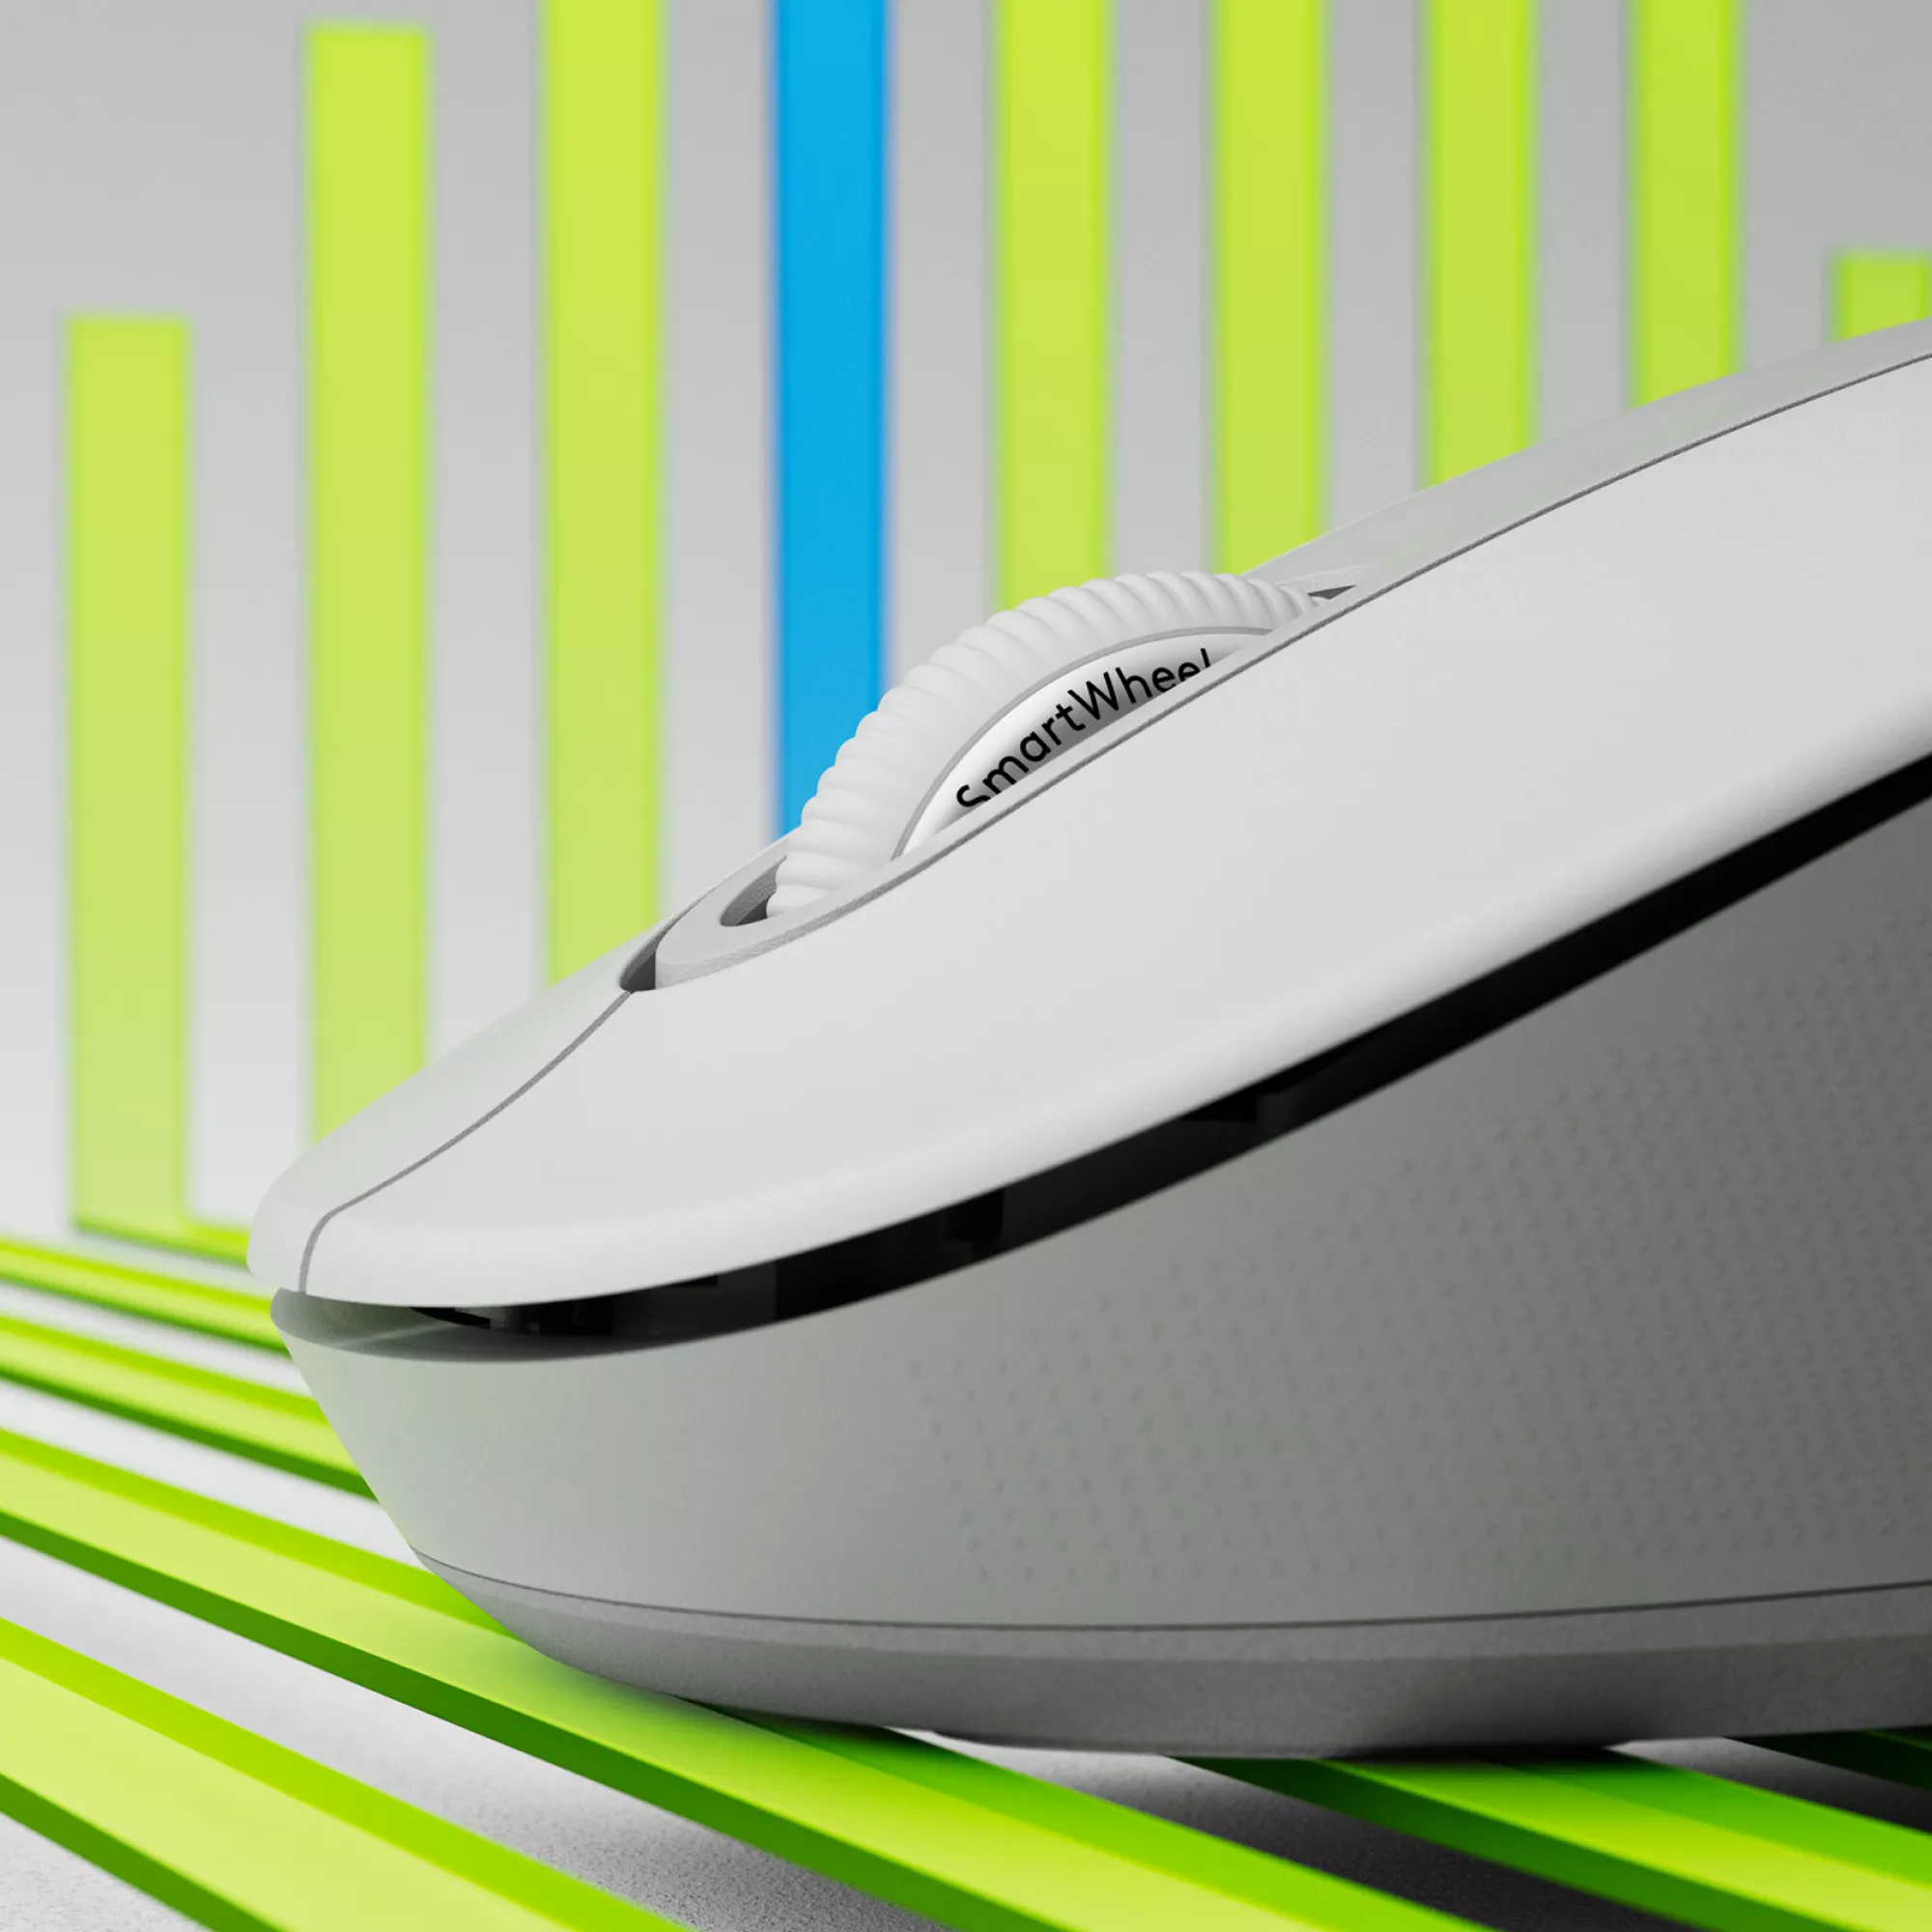 Vente LOGITECH Signature M650 Mouse optical 5 buttons wireless Logitech au meilleur prix - visuel 2